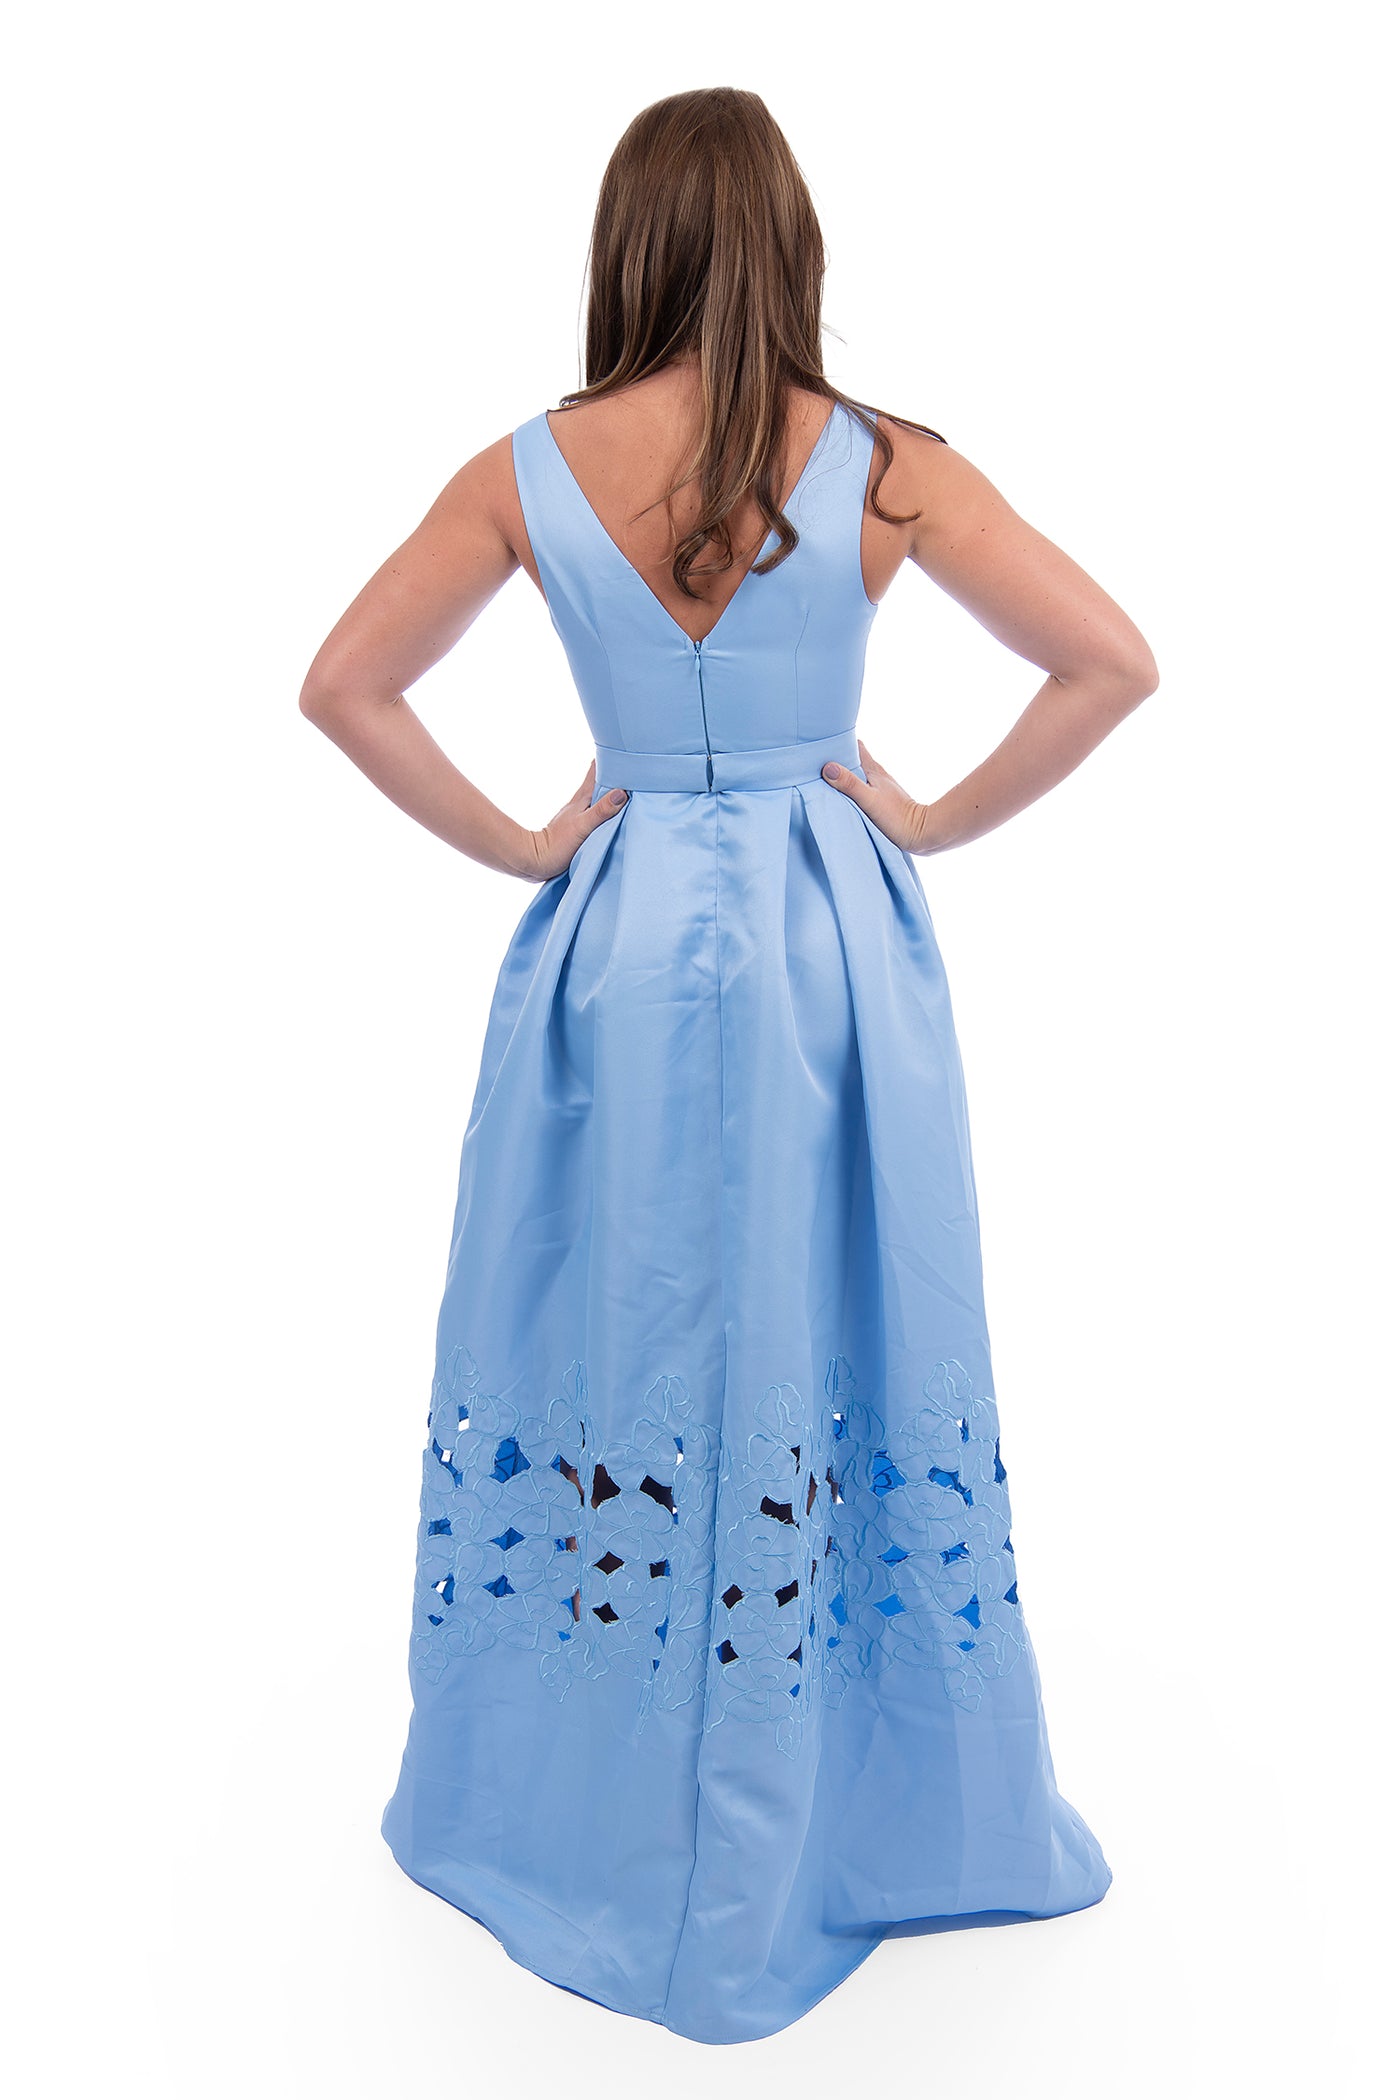 Malina, long light blue evening gown